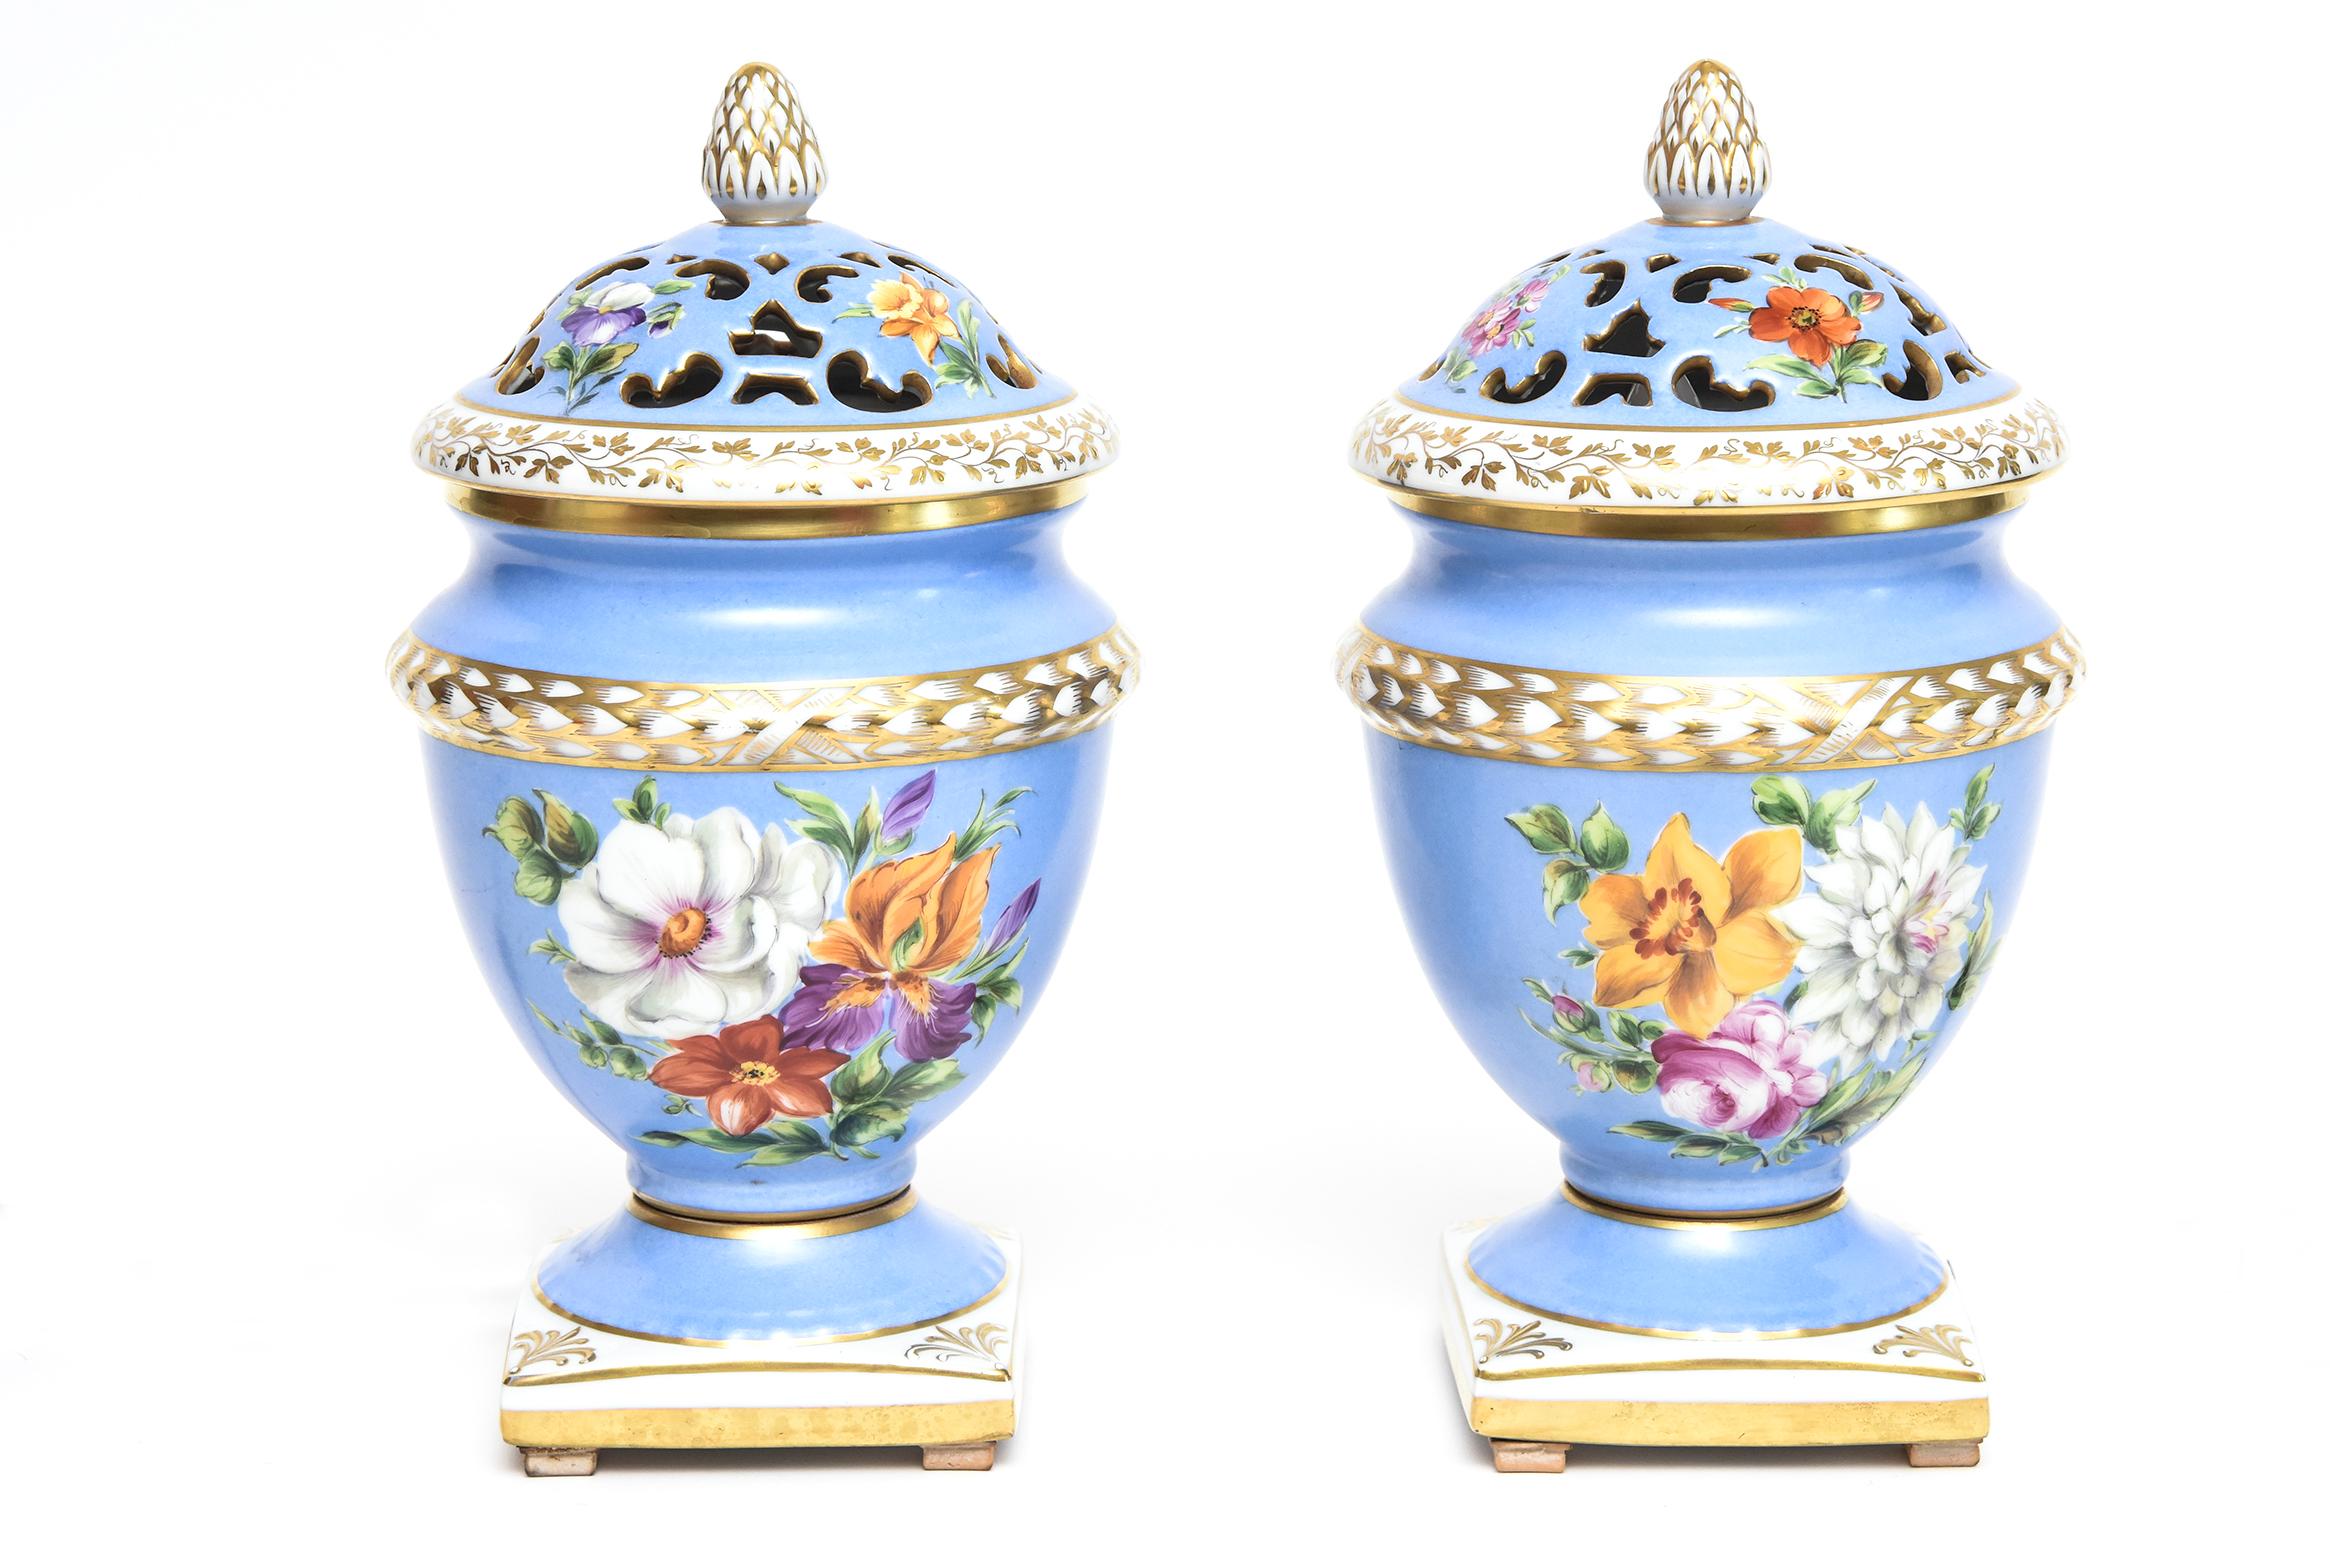 Paire de pots-pourris de Paris en porcelaine Le Tallec, datant du milieu du XXe siècle, de couleur bleu pâle et blanc, avec des décorations de fleurs peintes et des garnitures dorées. Ils ont des couvercles amovibles et ont été électrifiés en